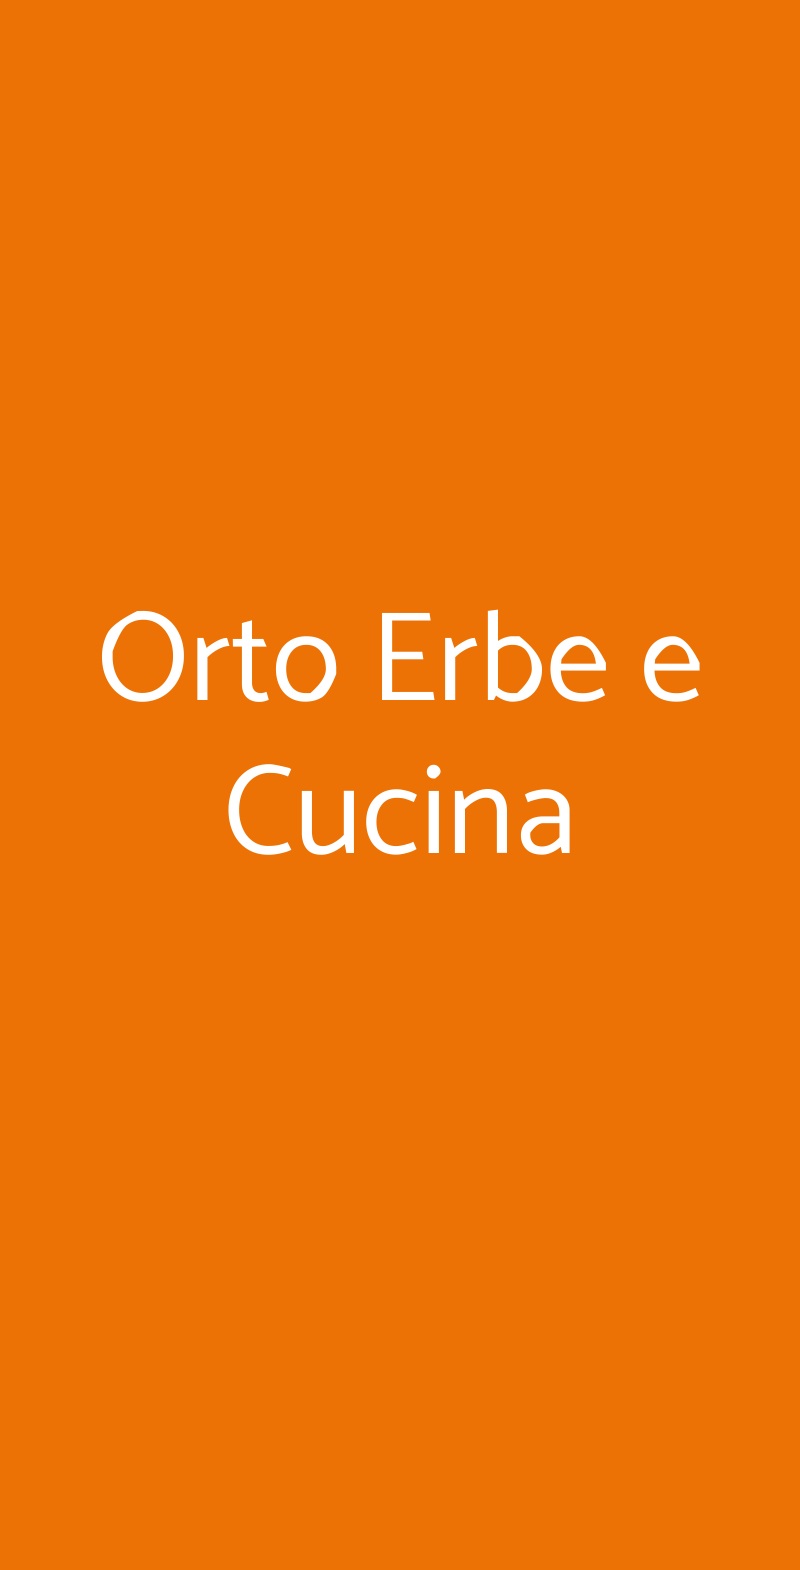 Orto Erbe e Cucina Milano menù 1 pagina